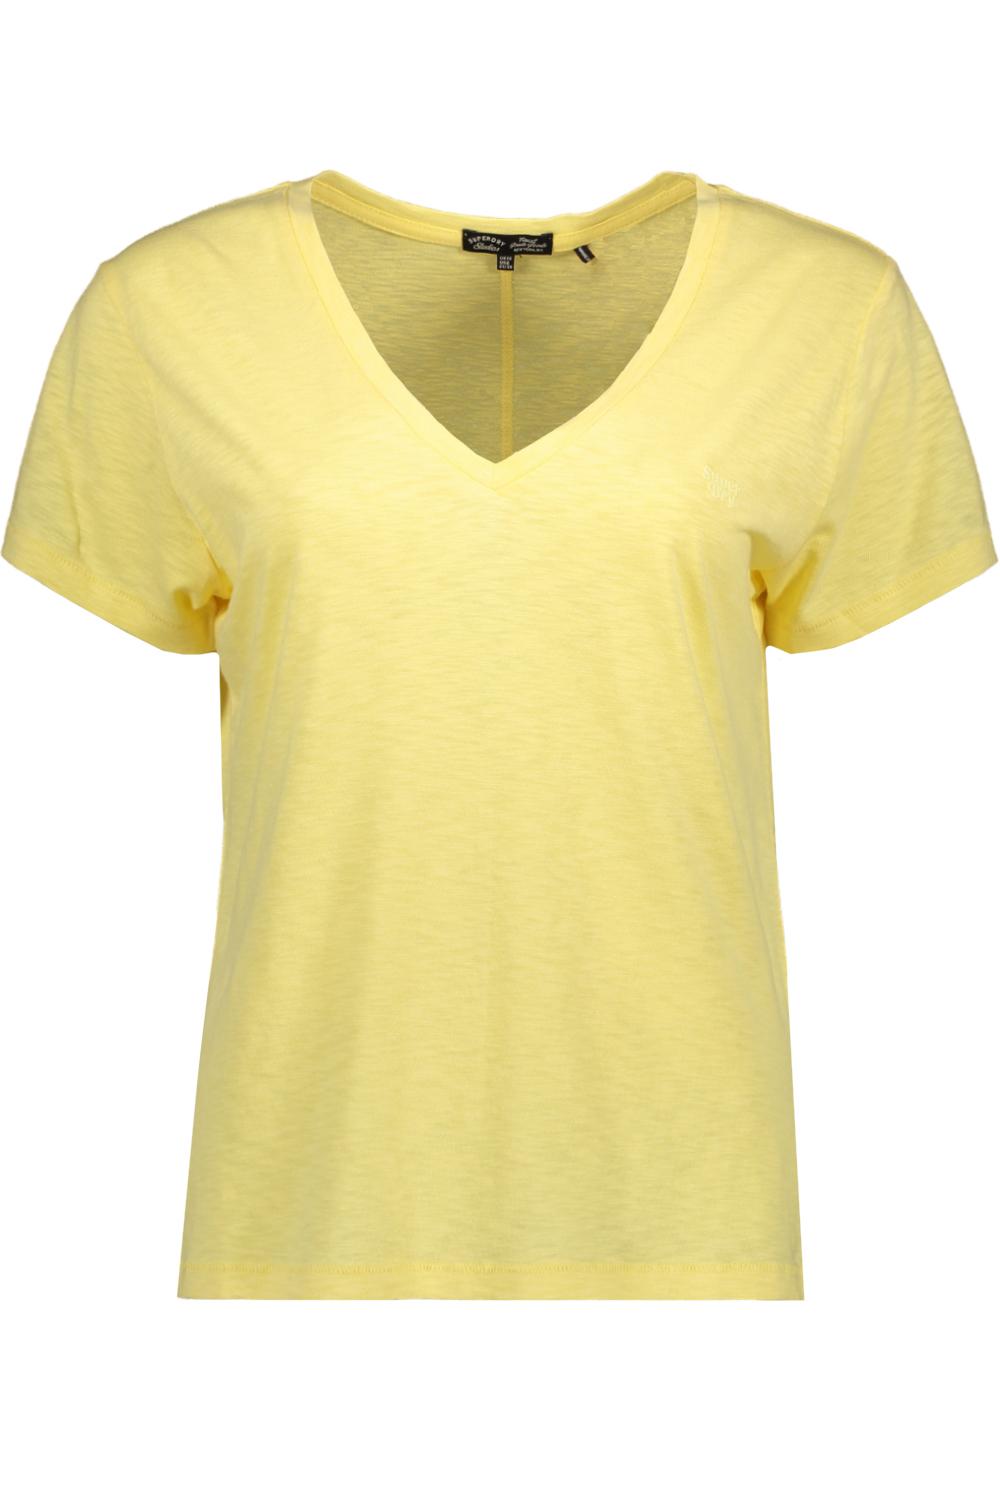 Für den Versandhandel im Ausland studios slub emb pale tee superdry yellow w1011181a qlc vee t-shirt